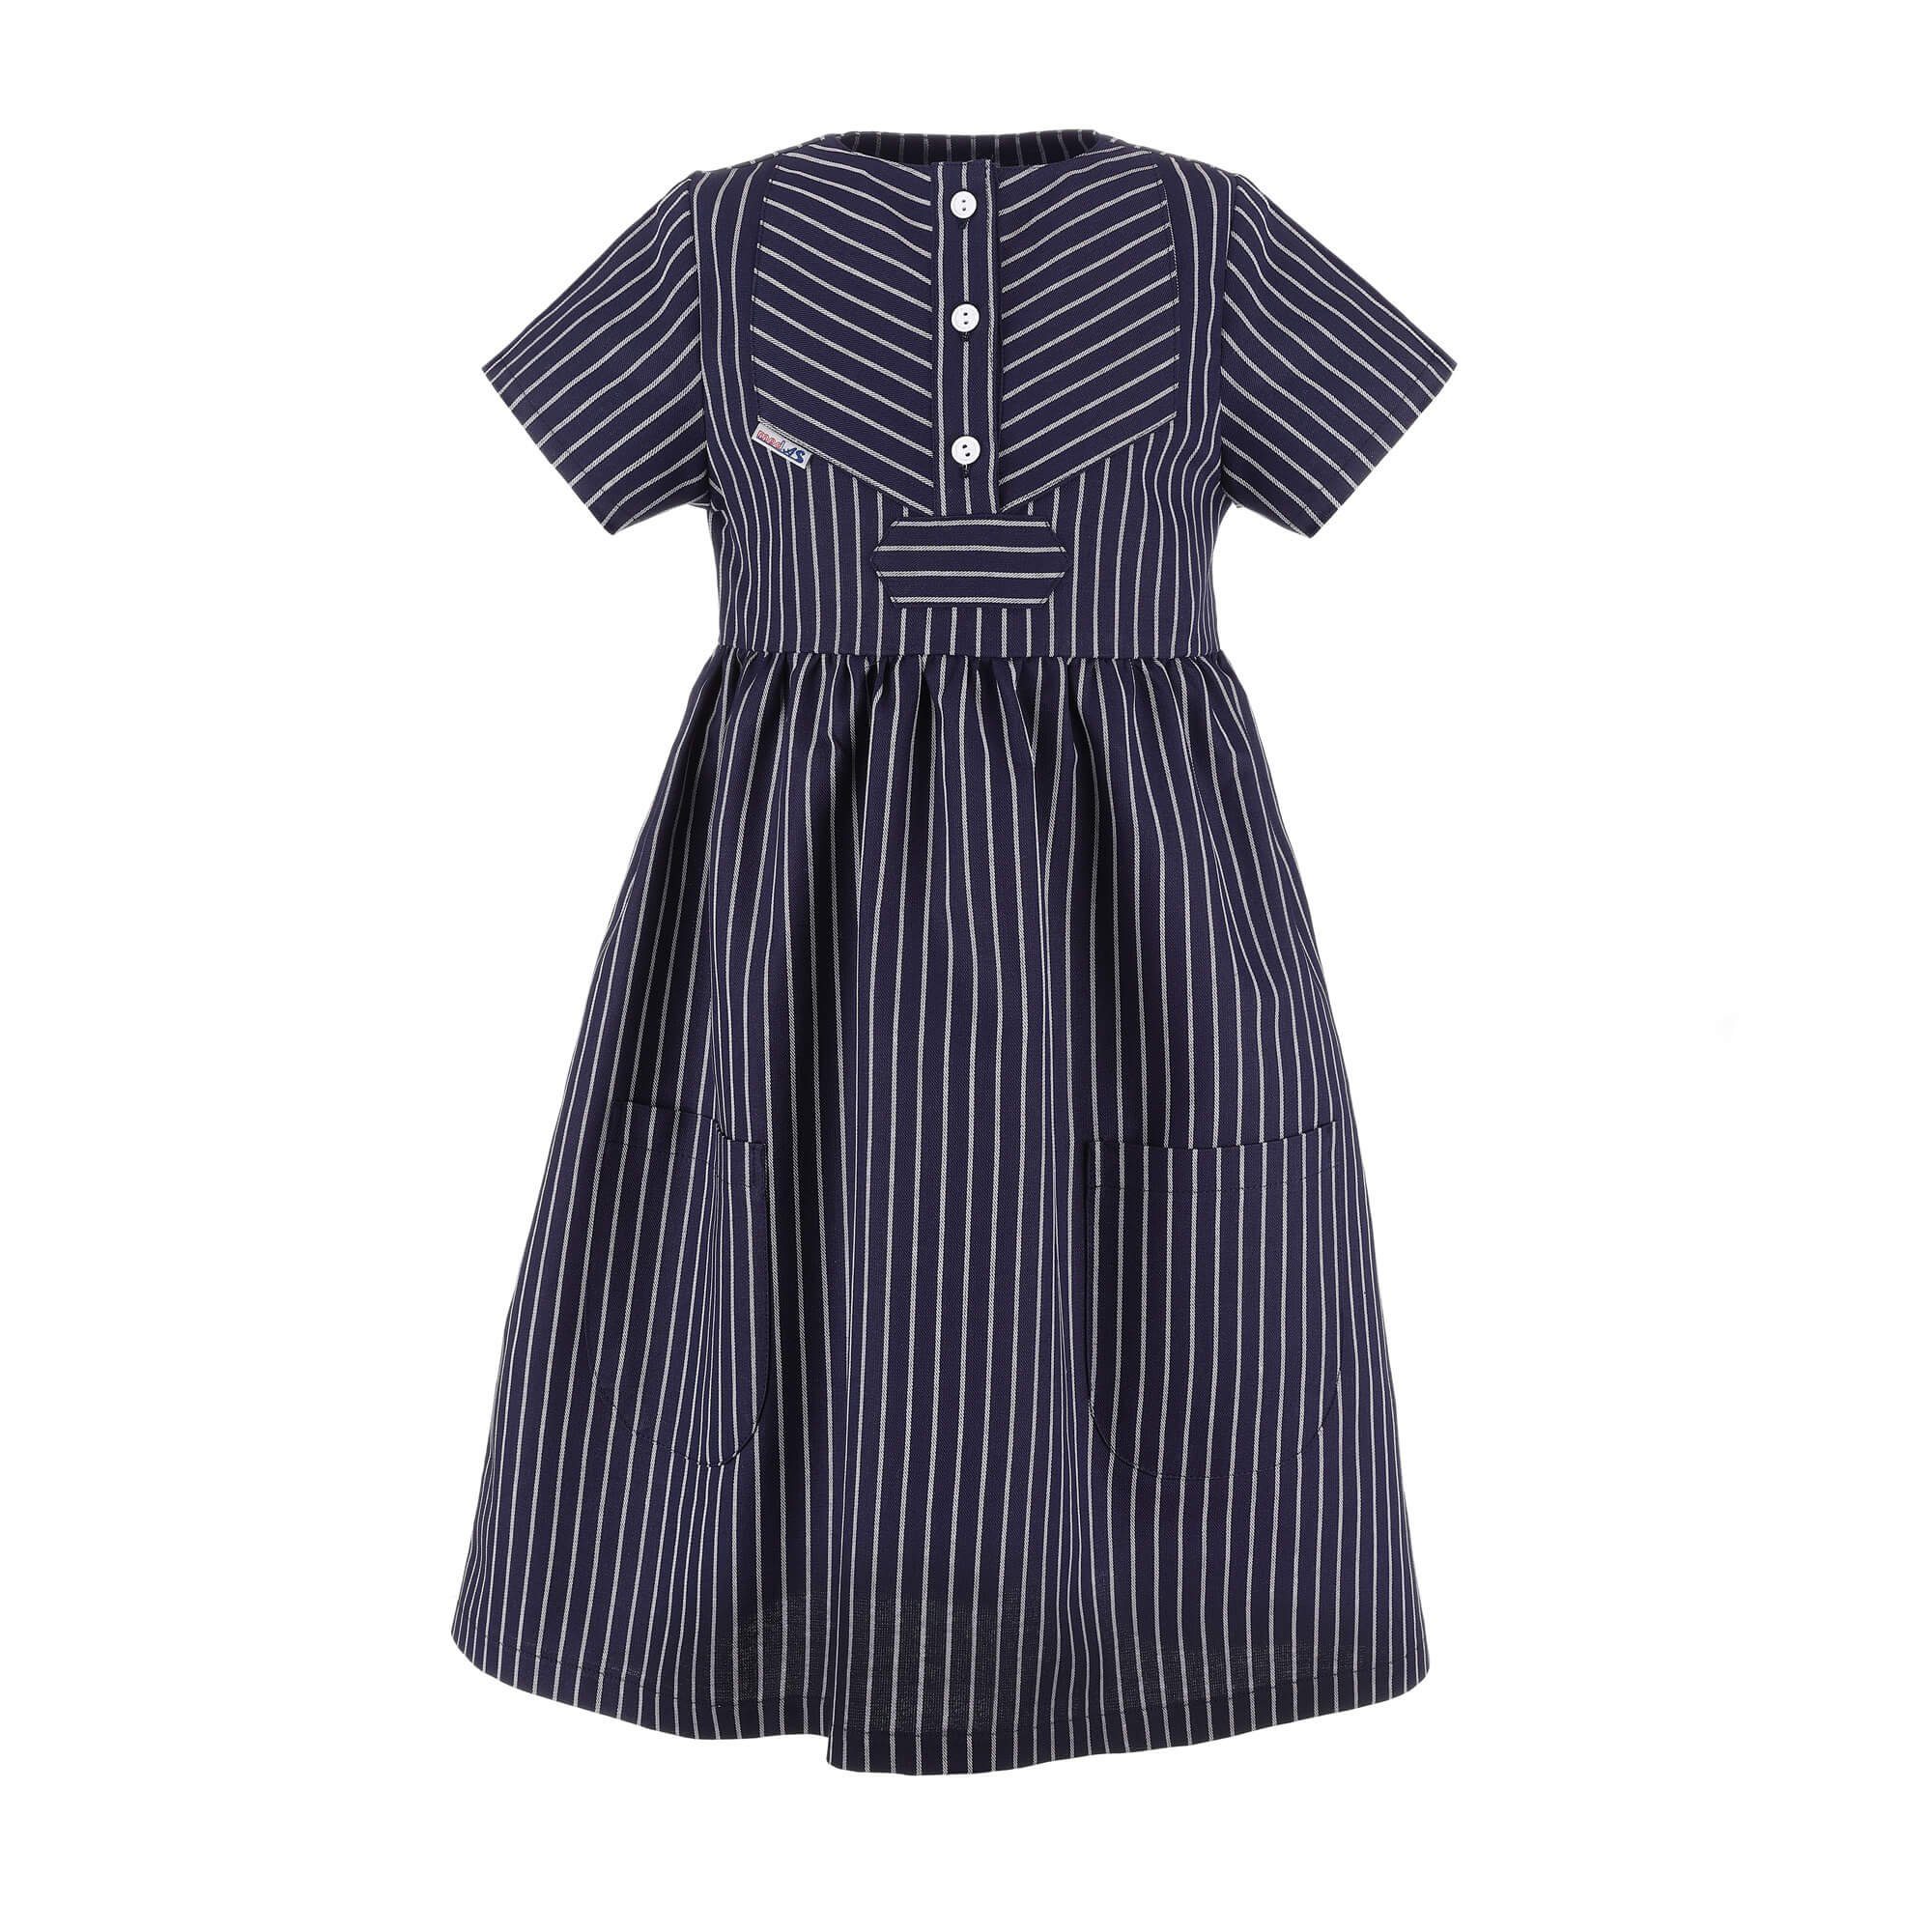 modAS Sommerkleid Kinder Fischerkleid Klassisch - Gestreiftes Kleid Finkenwerder-Stil (10) breiter Streifen Blau